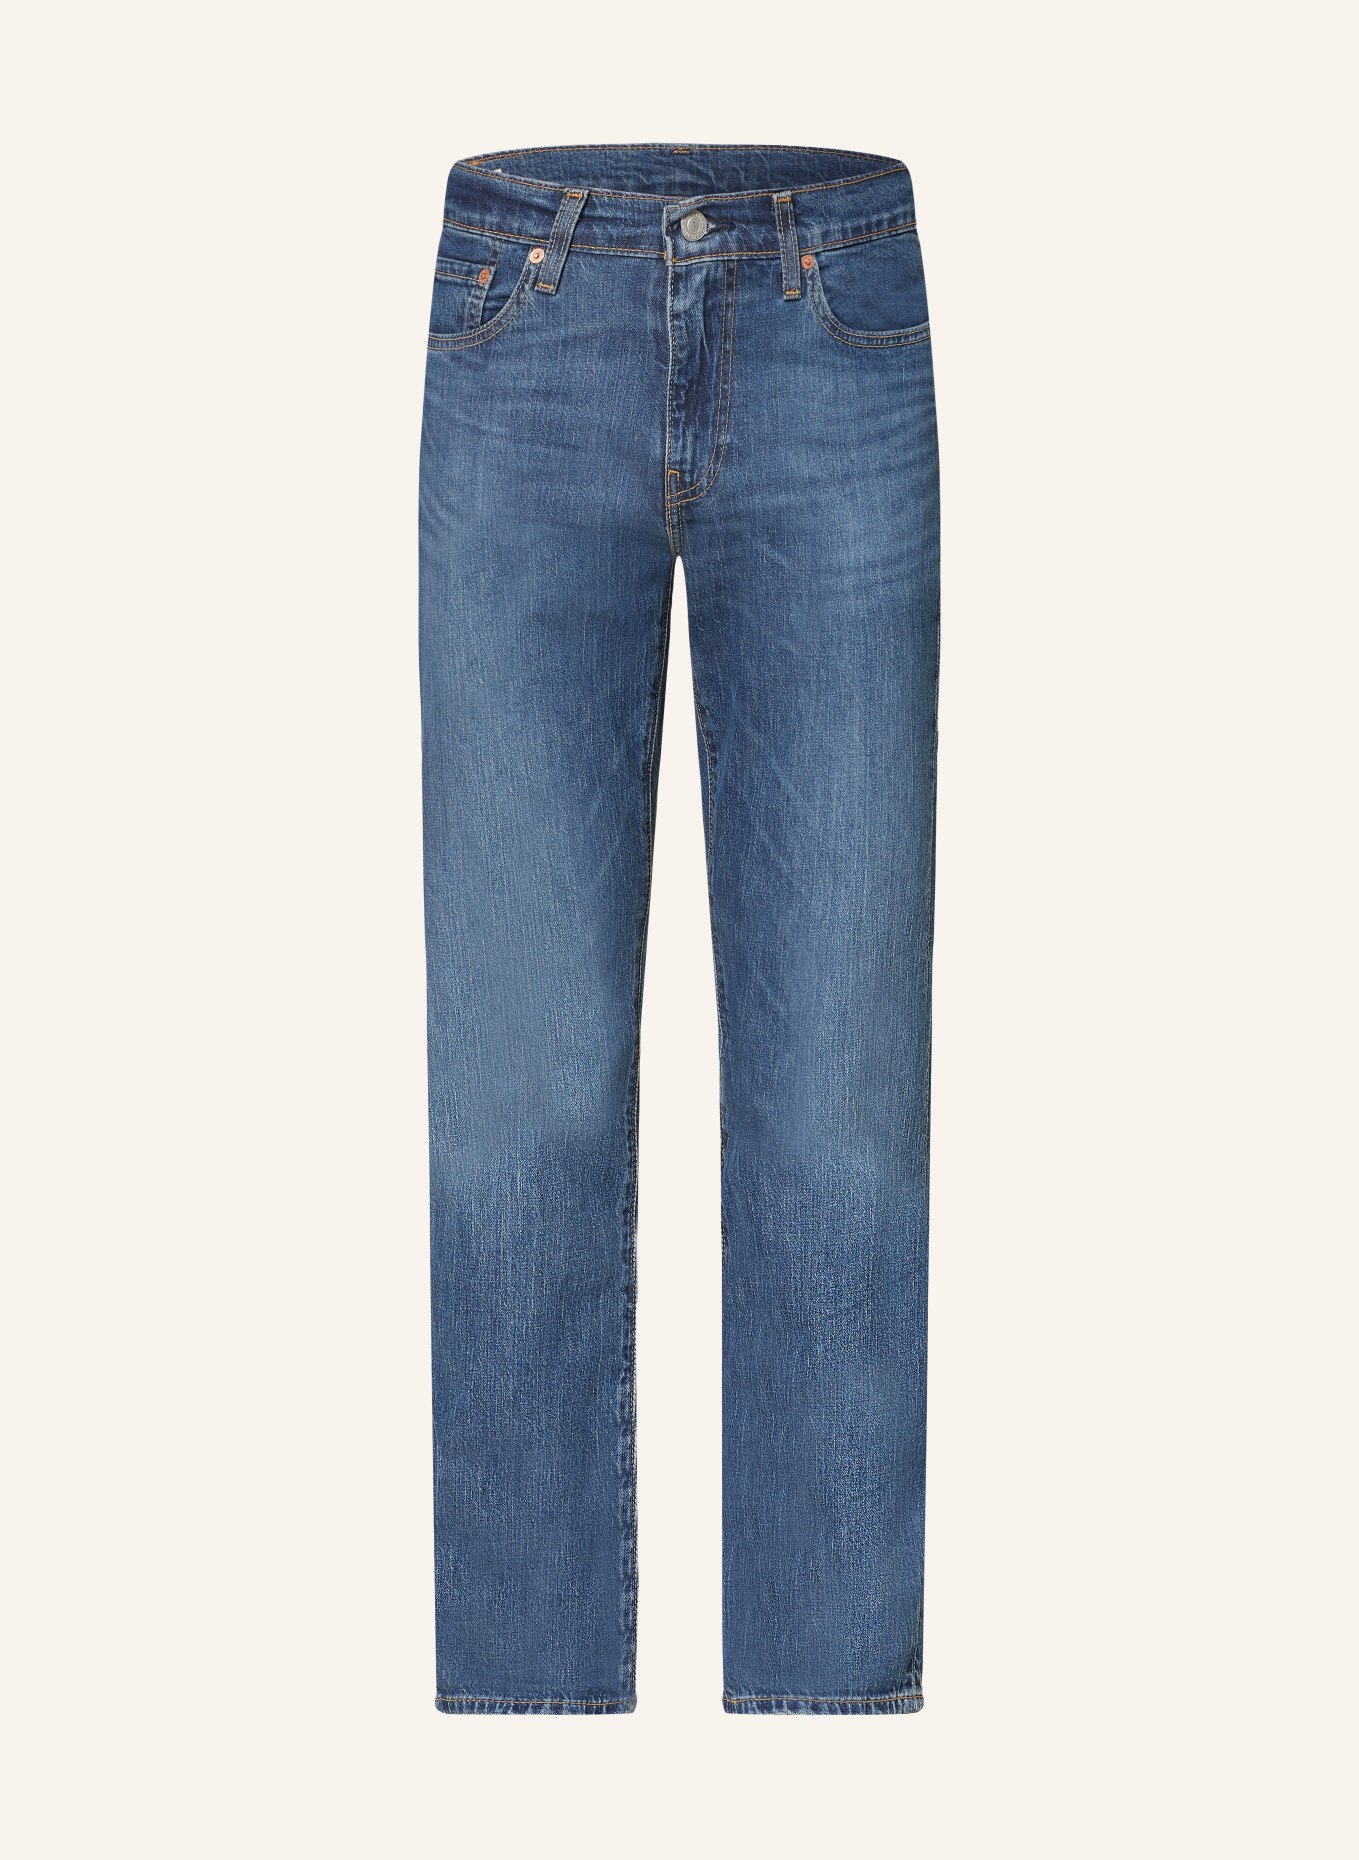 Levi's® Jeans 511 Slim Fit, Farbe: 49 Med Indigo - Worn In (Bild 1)